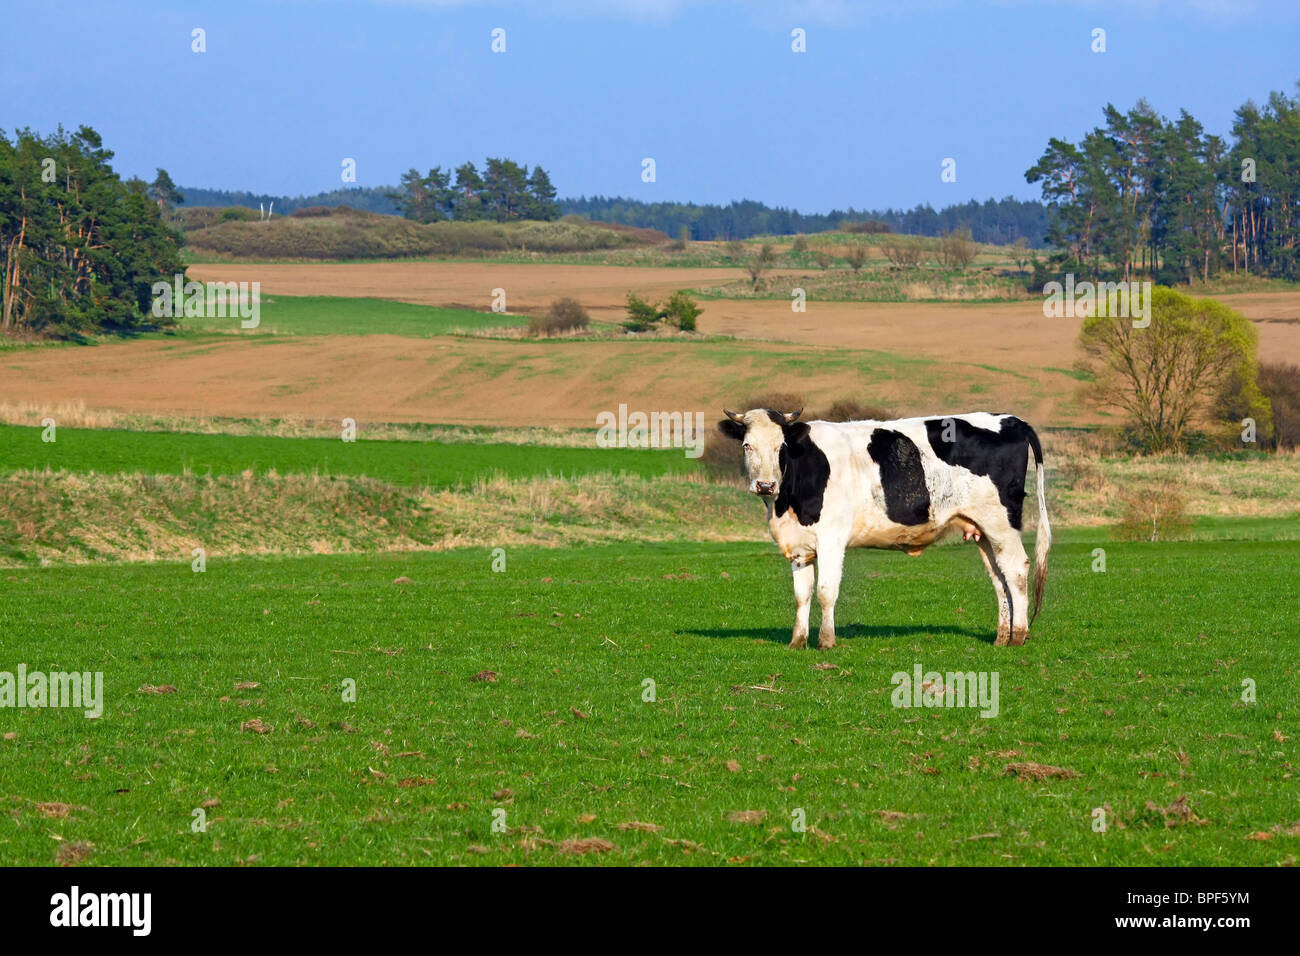 cow on pasture Stock Photo